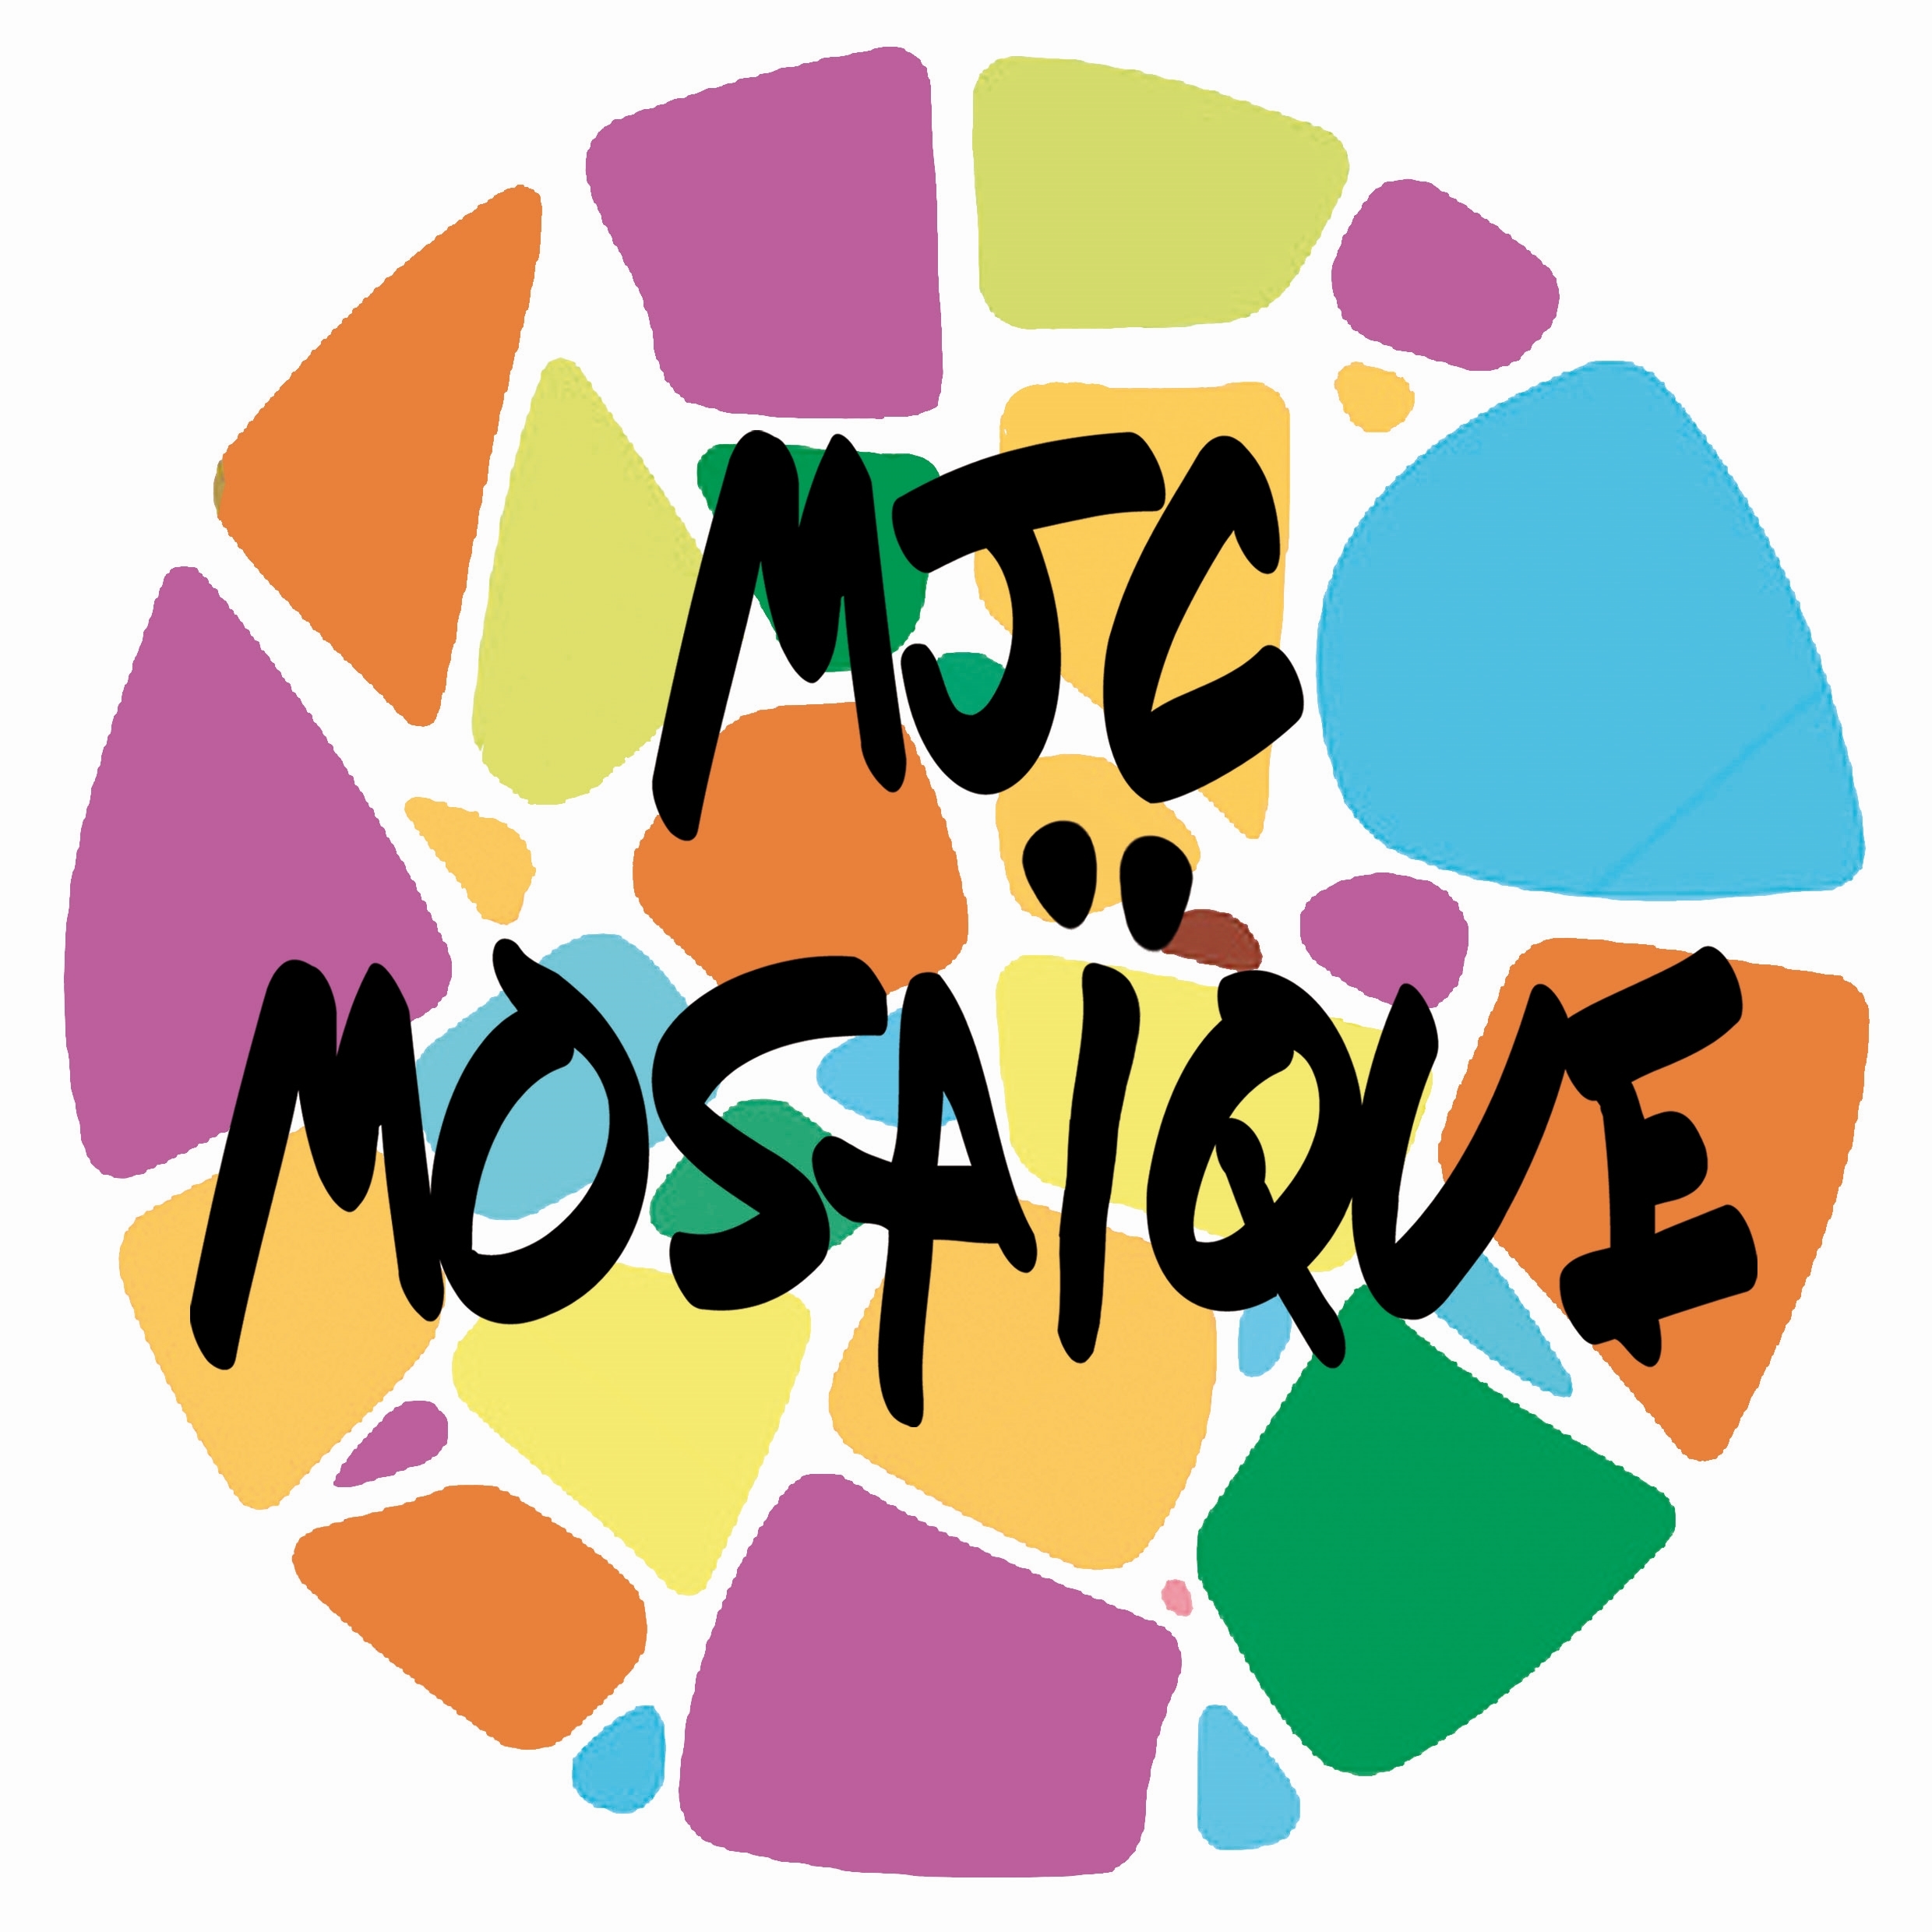 C:\Users\veronique.CSCS\mjc mosaique\MJCMOSAIQUE - Documents\POLE SOCIO CULTUREL\COMMUN\logos\Logo MJC MOSAIQUE.jpg